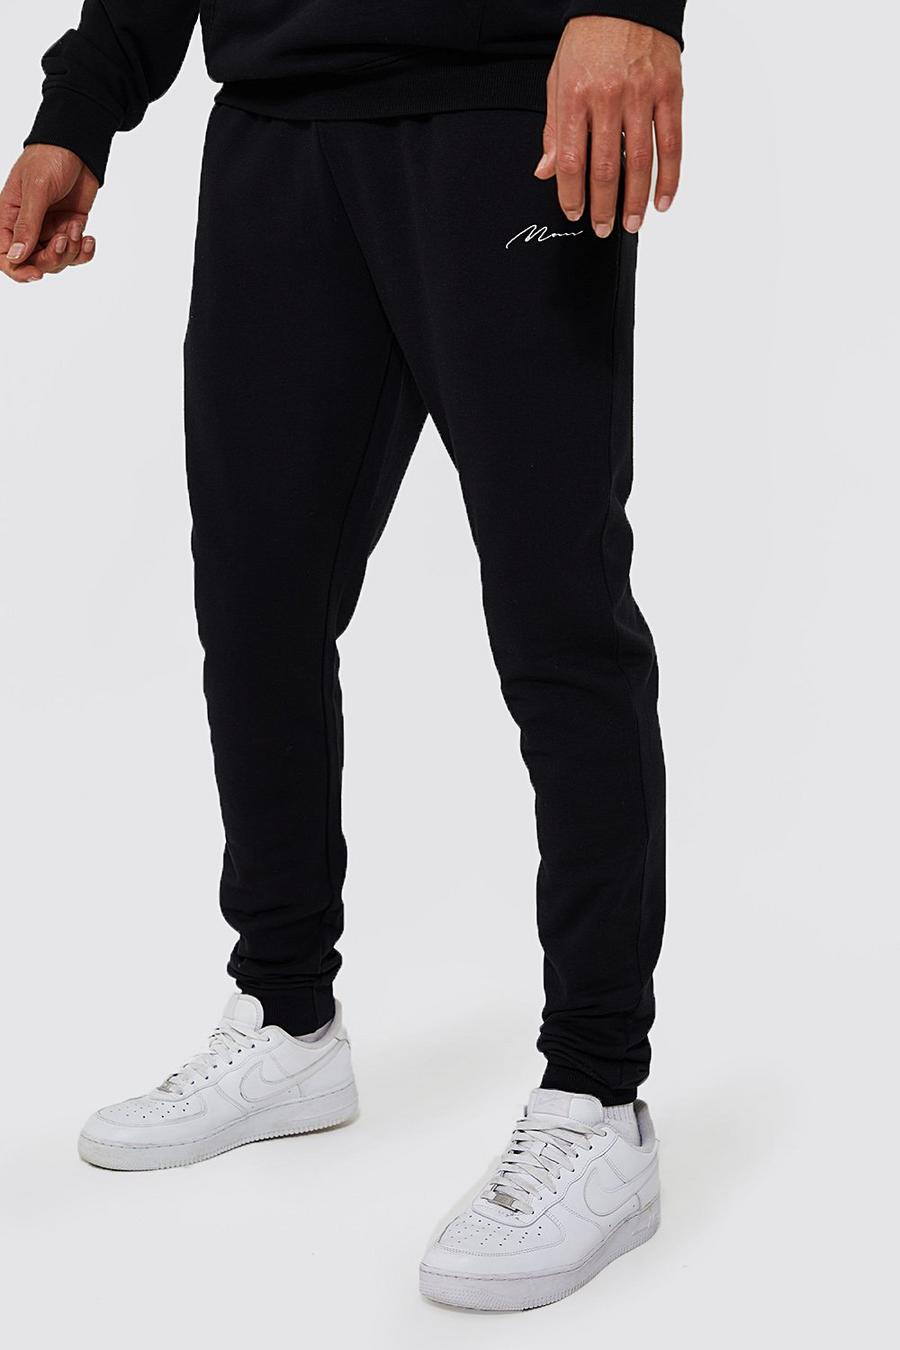 Black nero מכנסי ריצה סקיני מבד משולב בכותנת REEL עם כיתוב Man, לגברים גבוהים